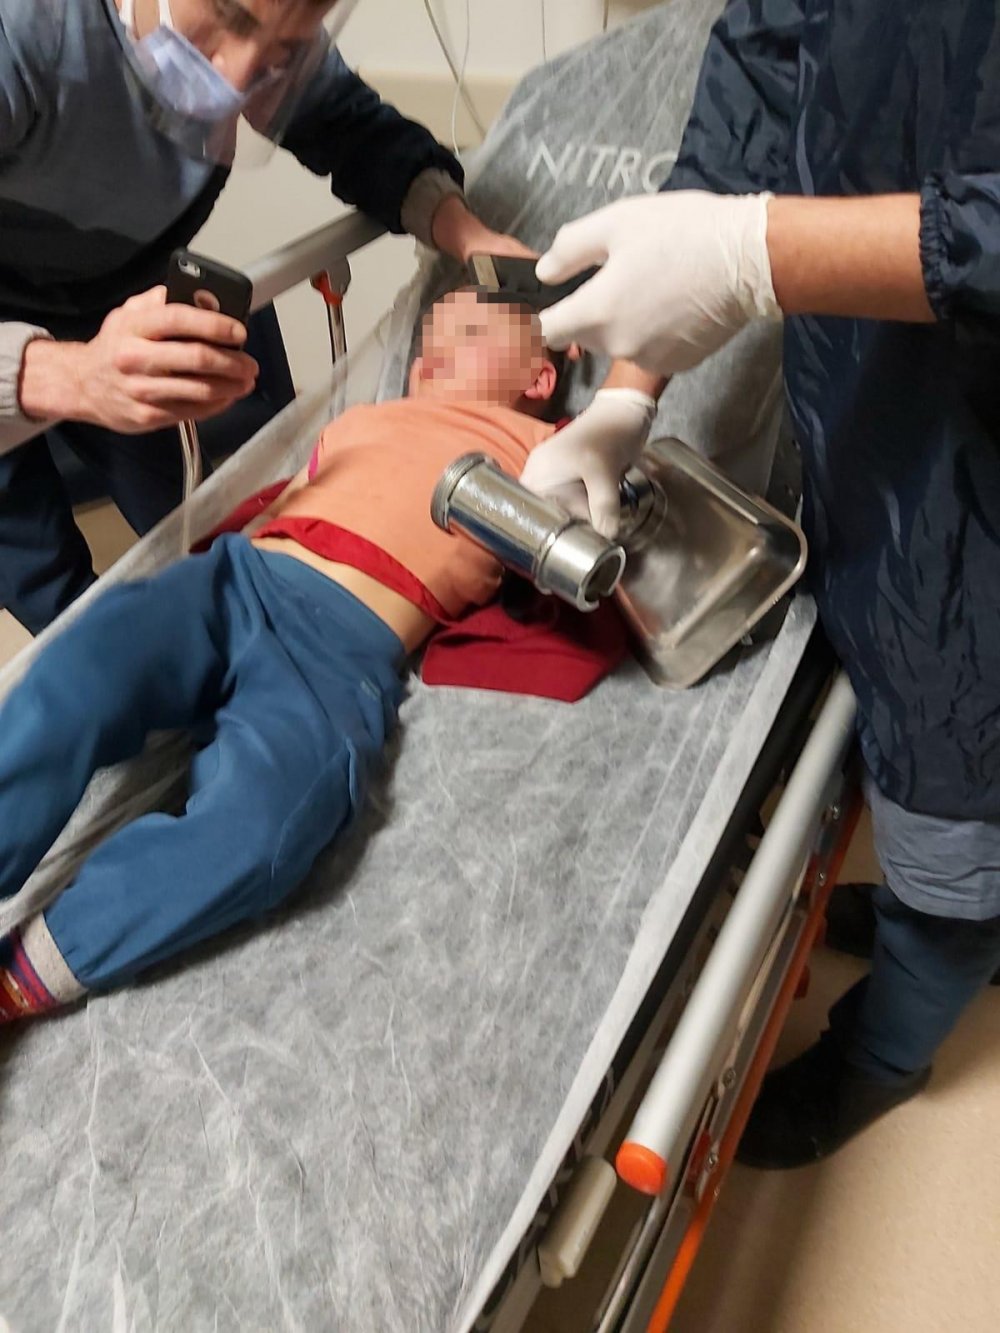 Eskişehir’de elini kıyma makinesine kaptıran 3 yaşındaki yabancı uyruklu çocuk, makine parçalarıyla birlikte getirildiği hastanede başarılı bir operasyon geçirdi.